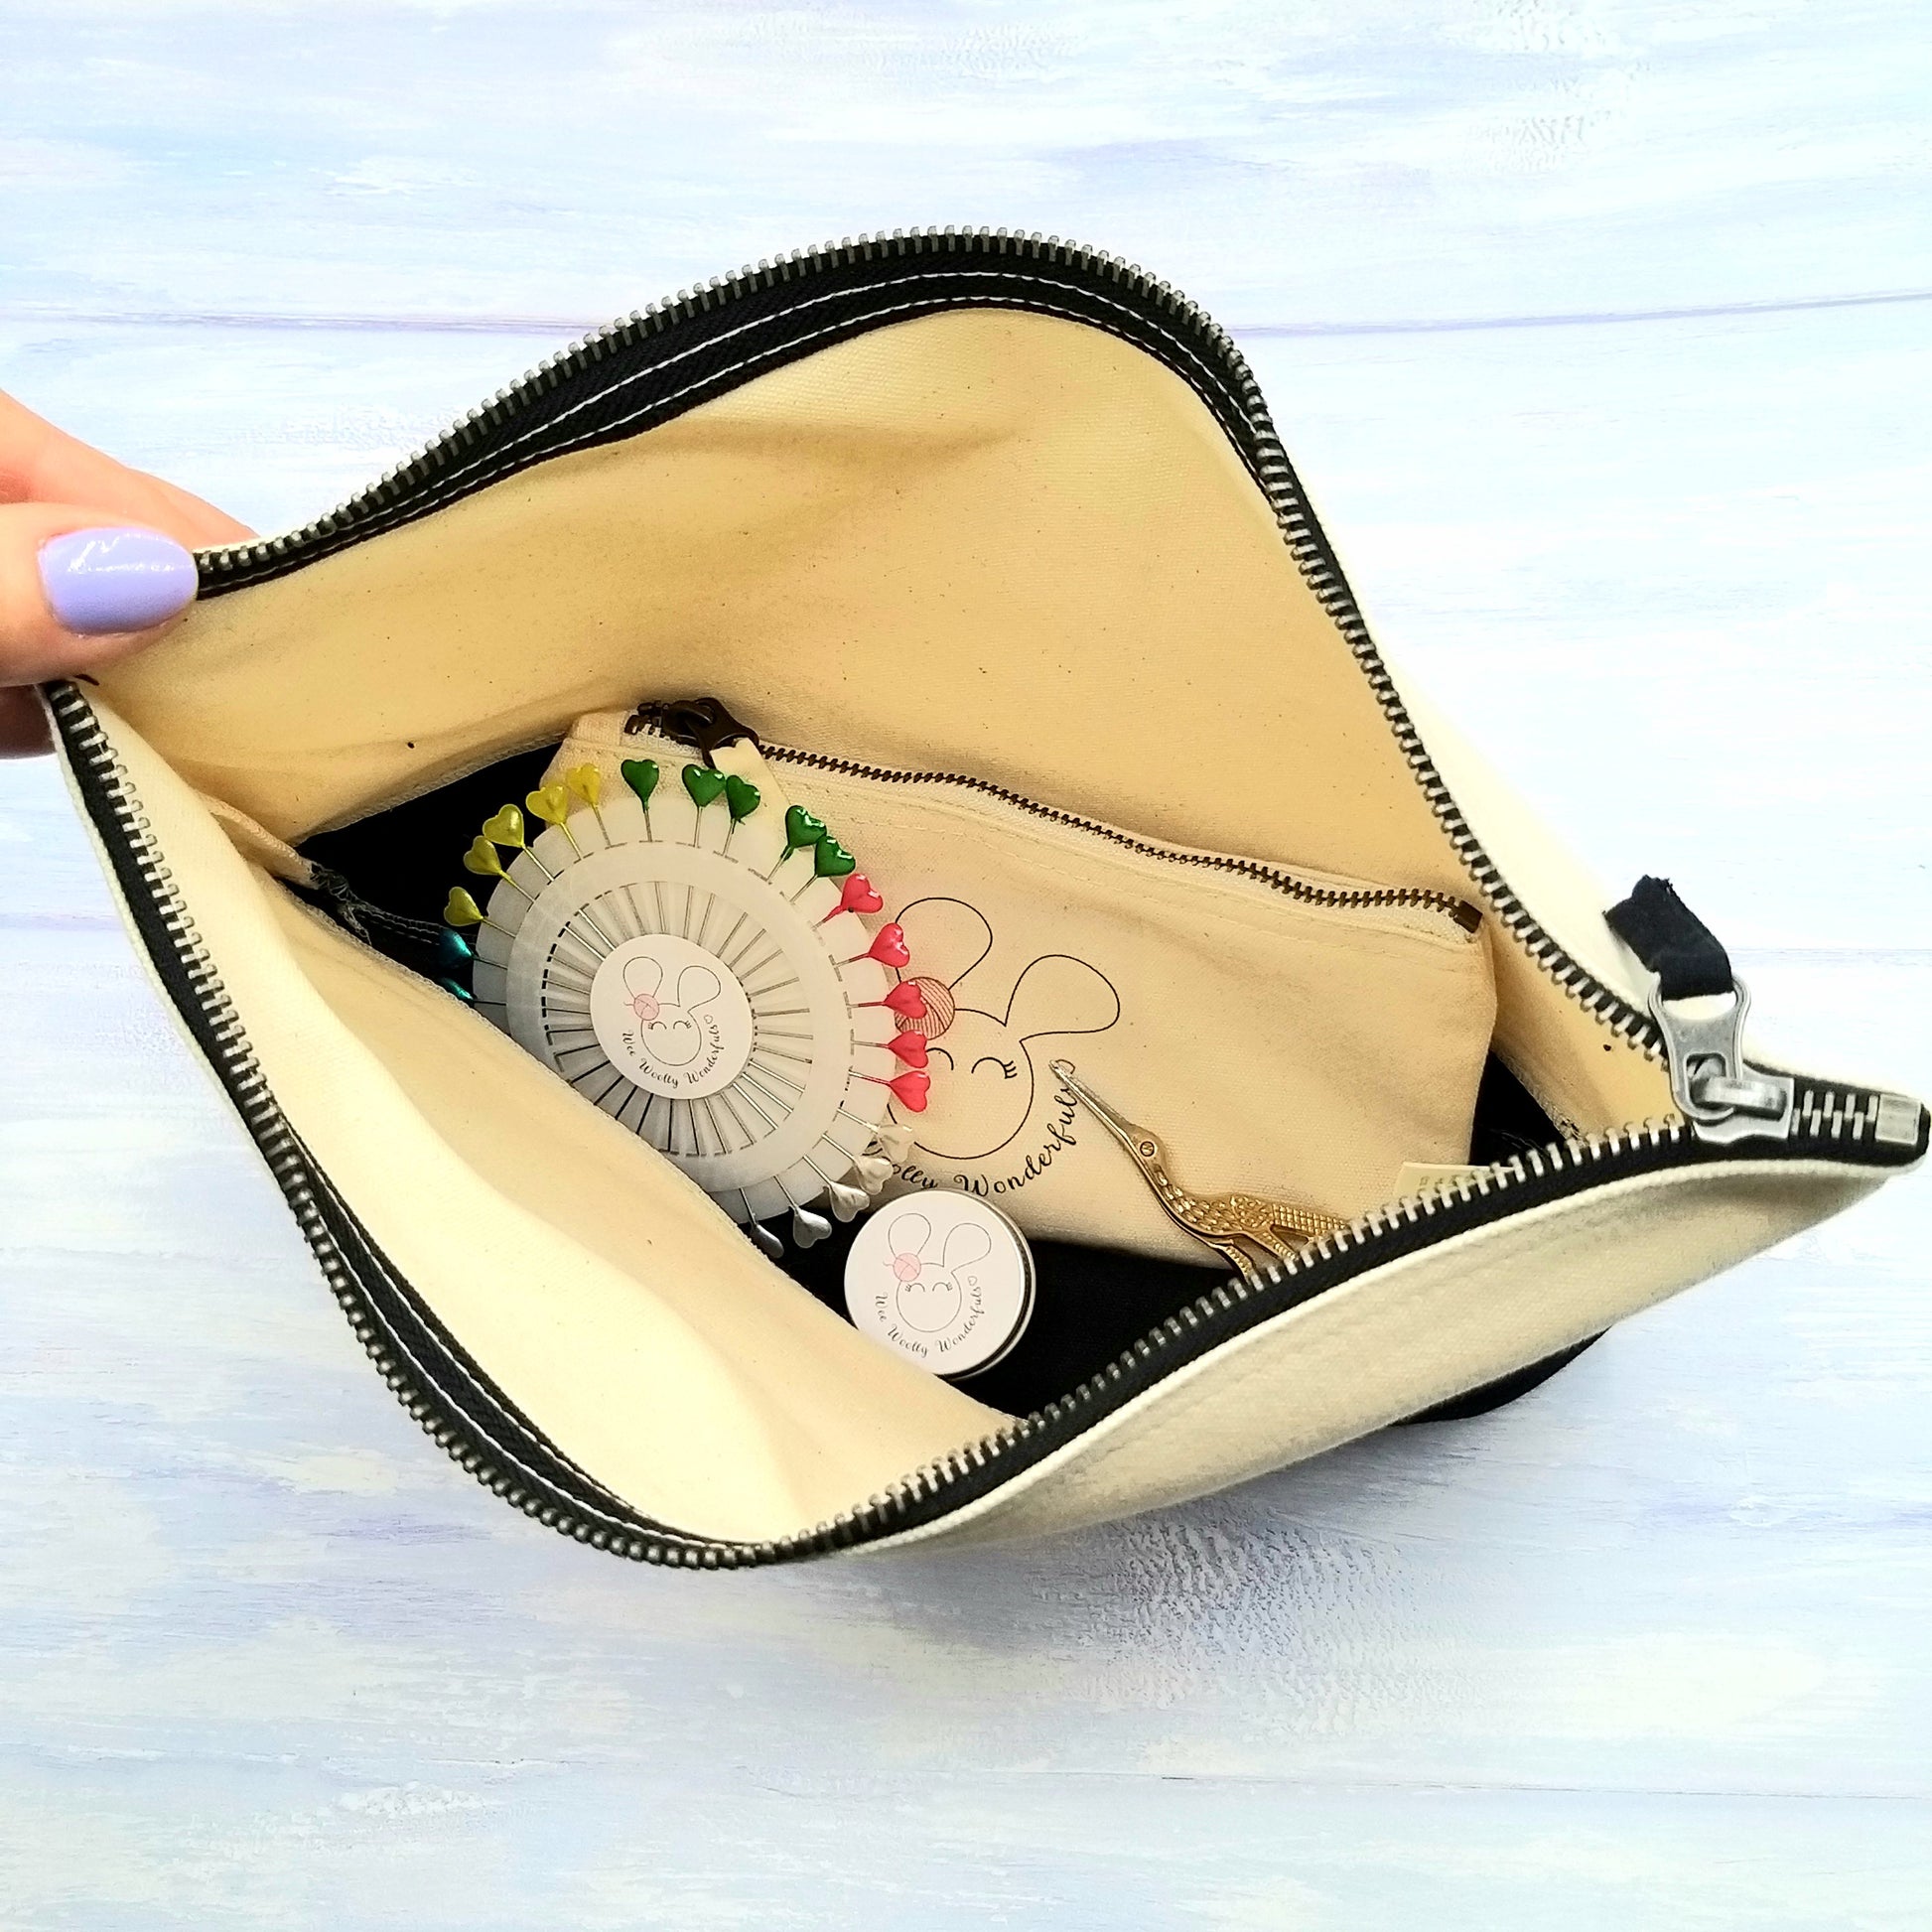 Crochet Accessories Set - view inside zip bag